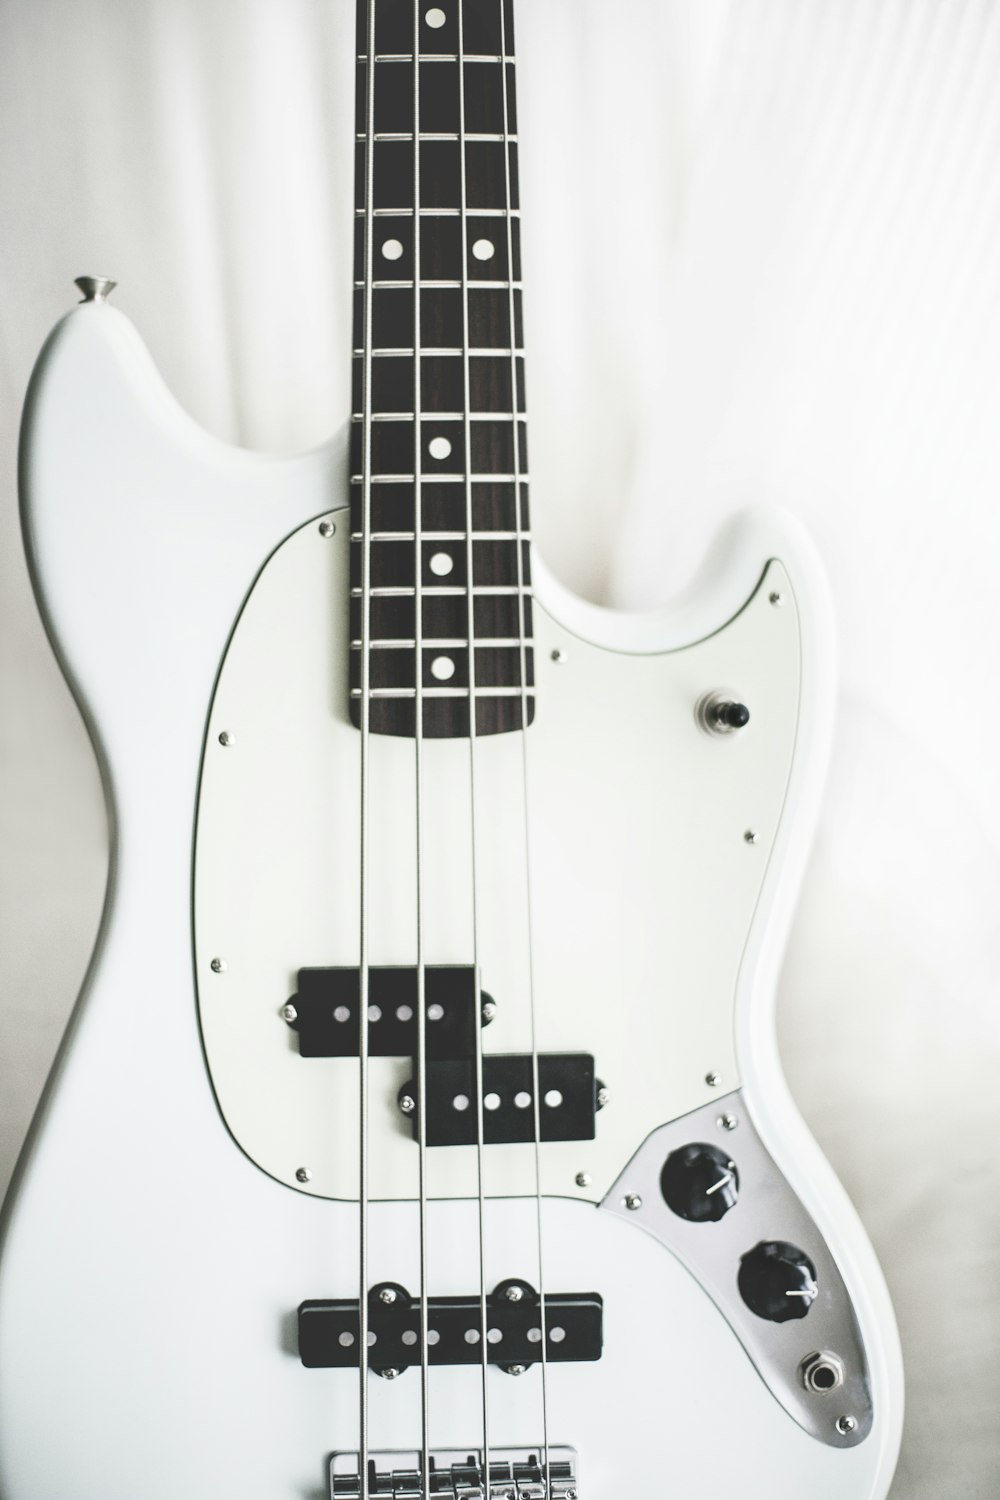 guitare basse électrique blanche et noire sur surface blanche